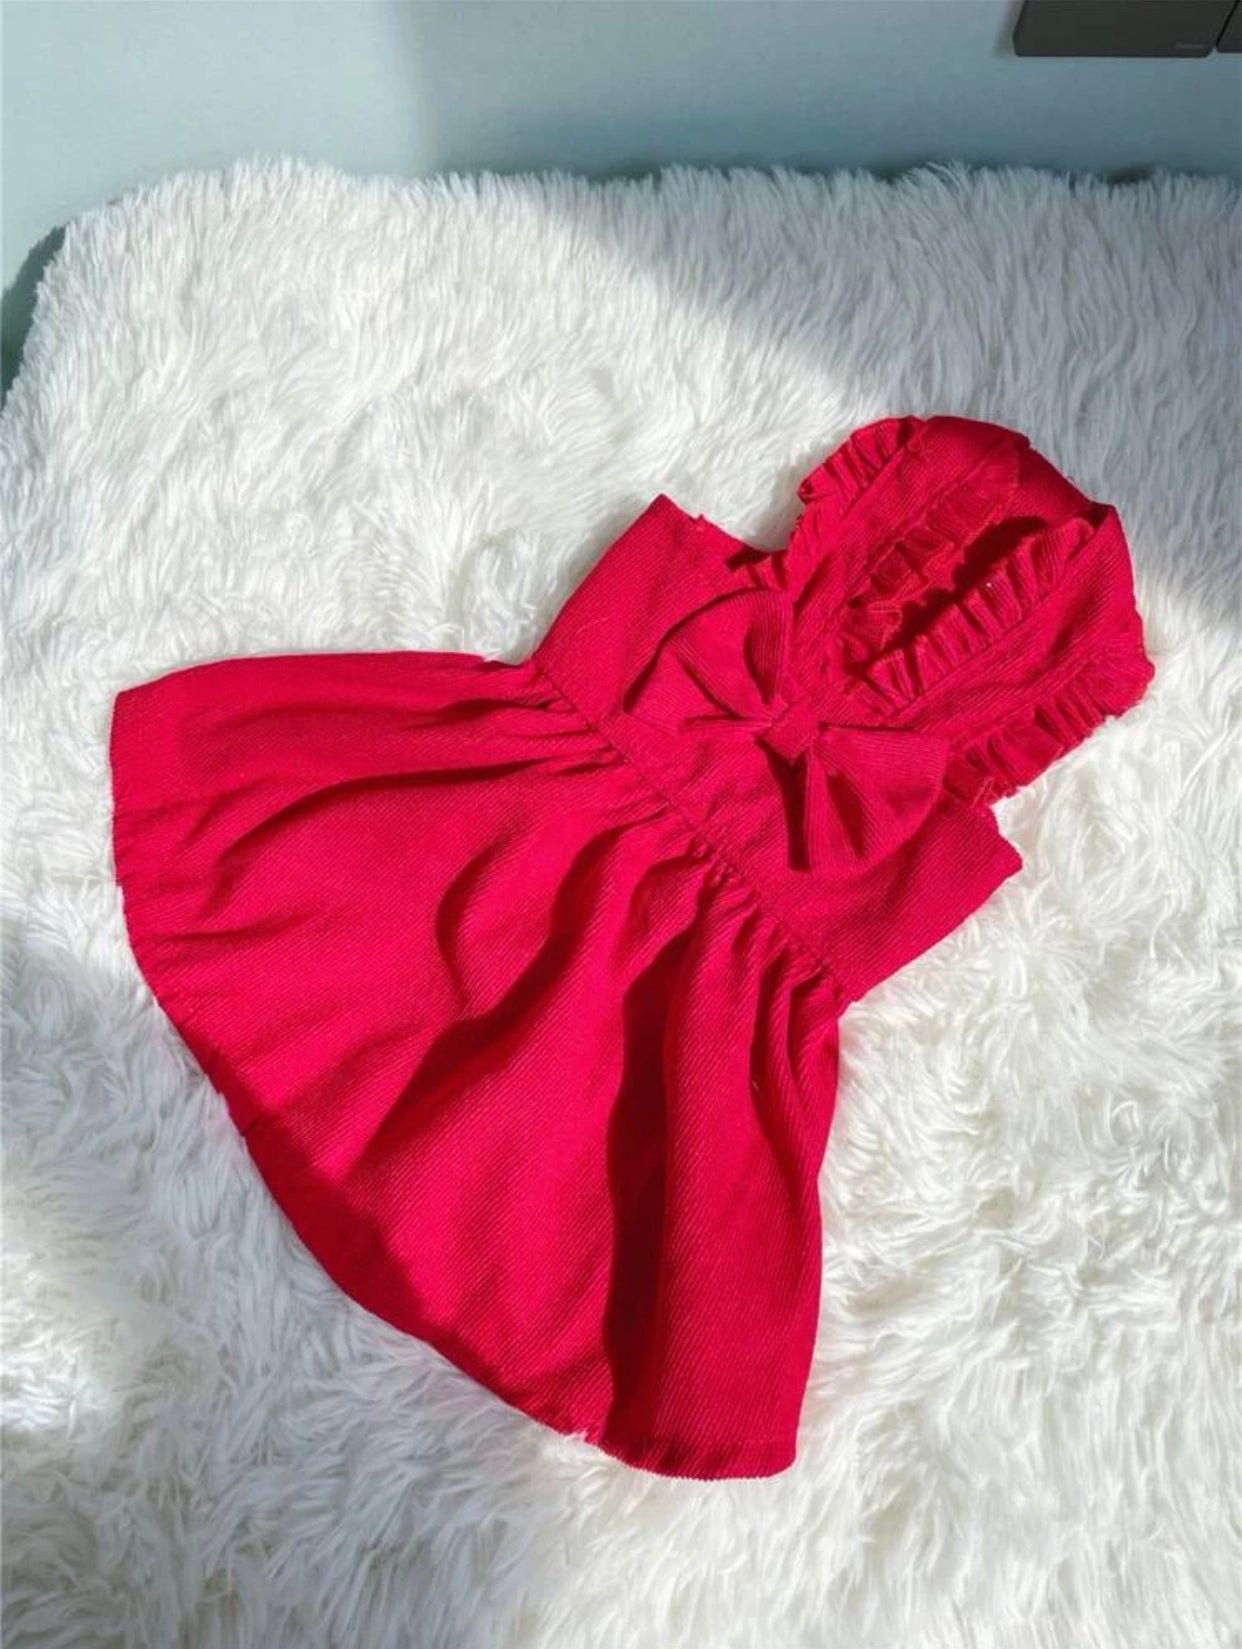 RED CORDAROY DRESS